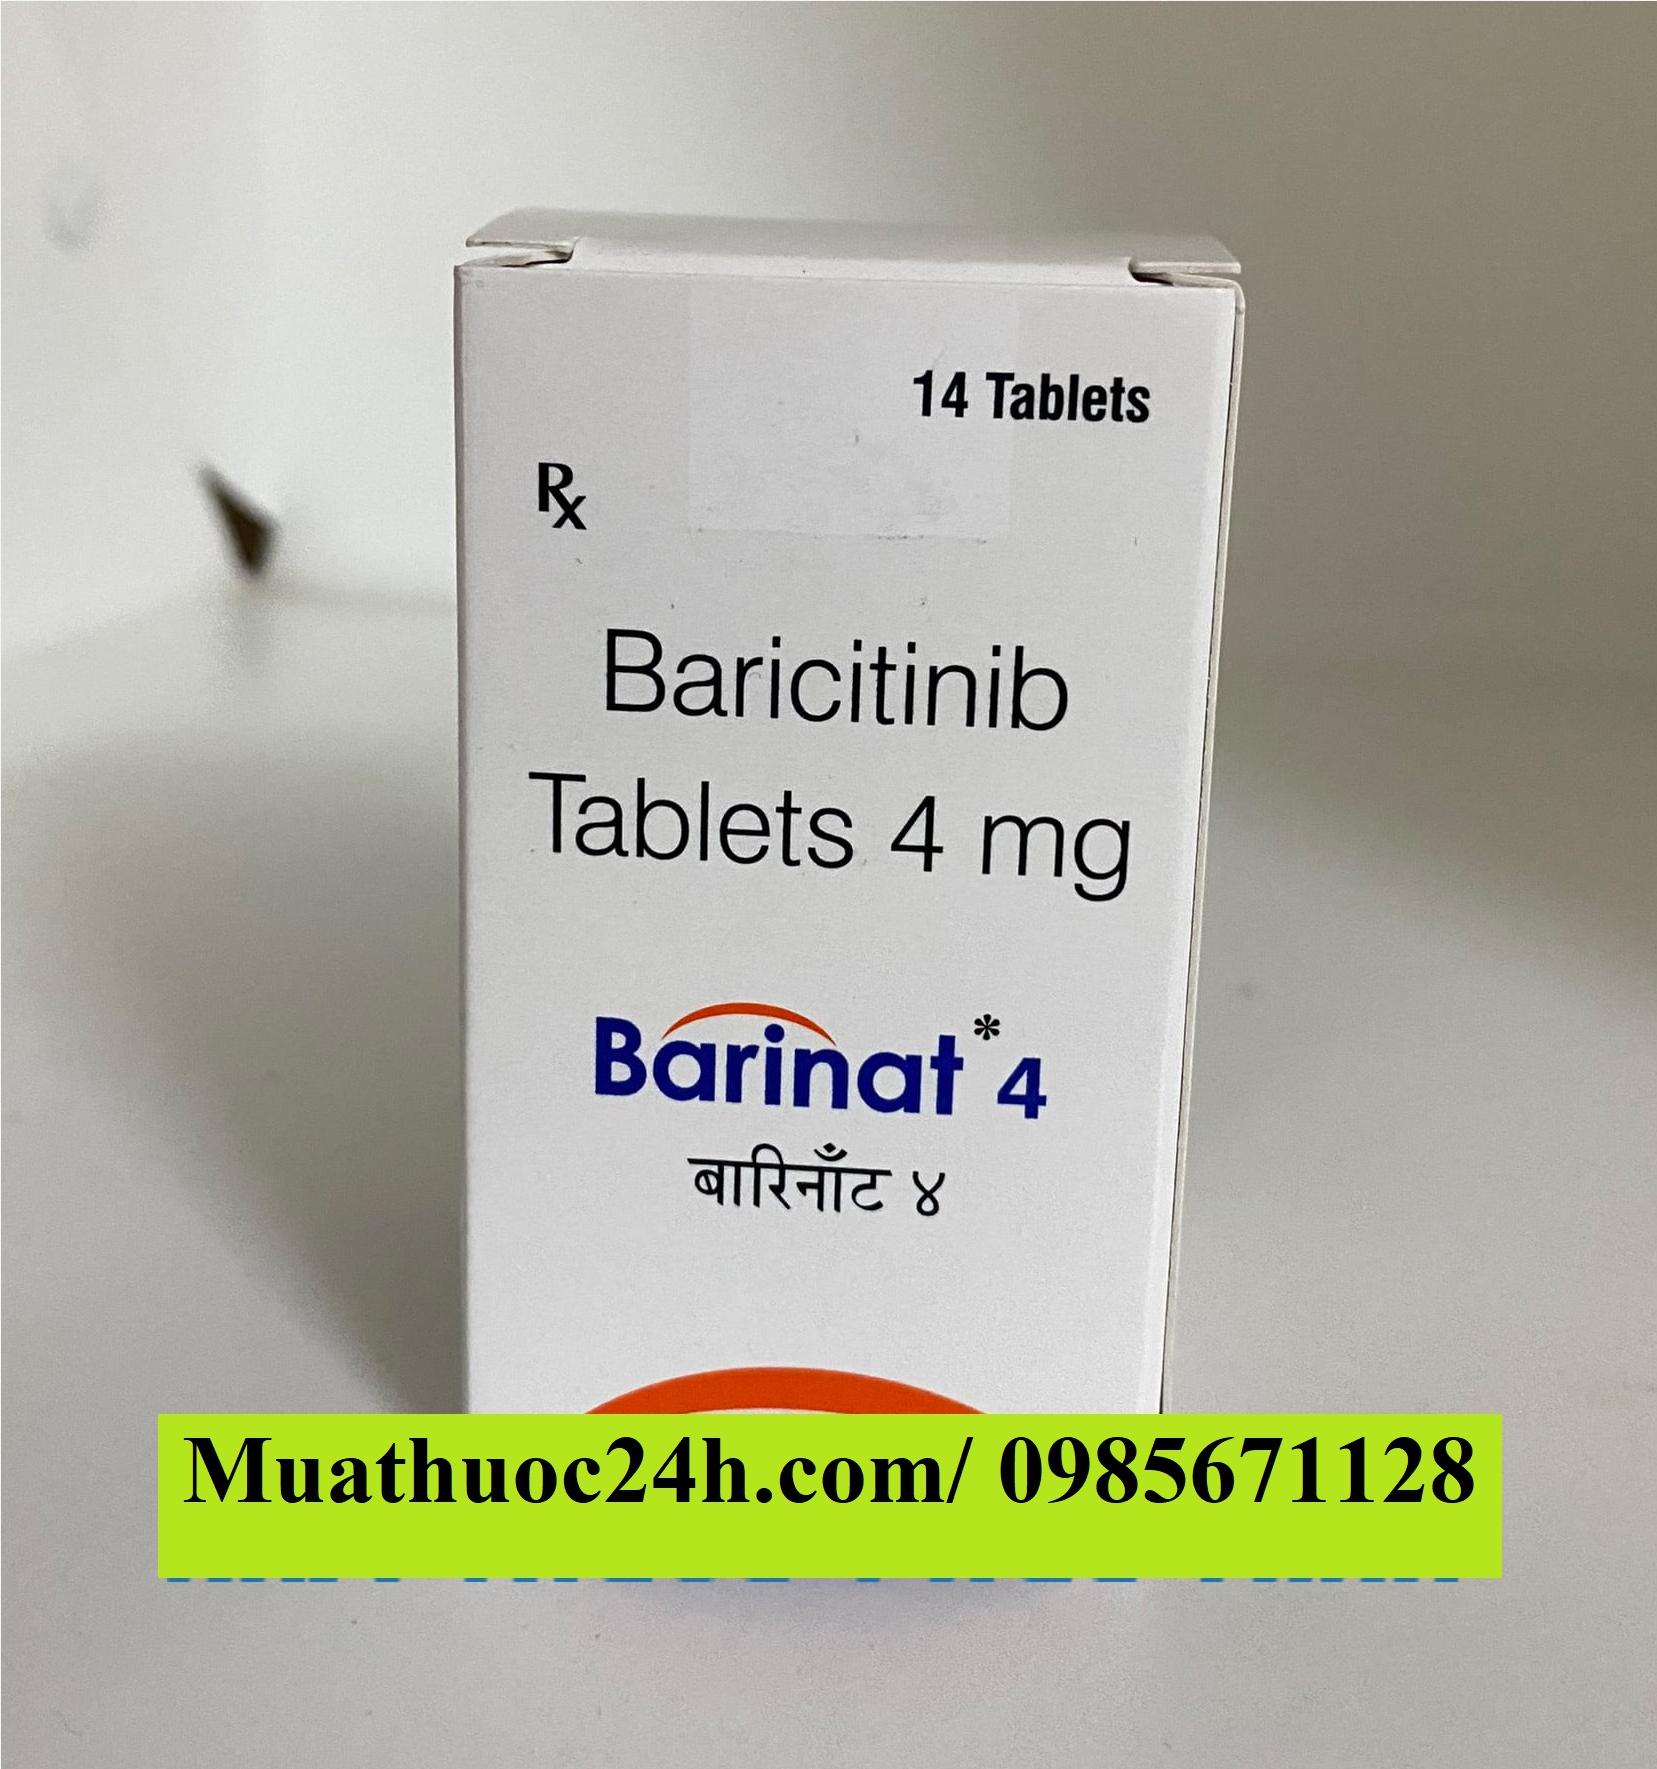 Thuốc Barinat 4mg Barcitinib giá bao nhiêu mua ở đâu?